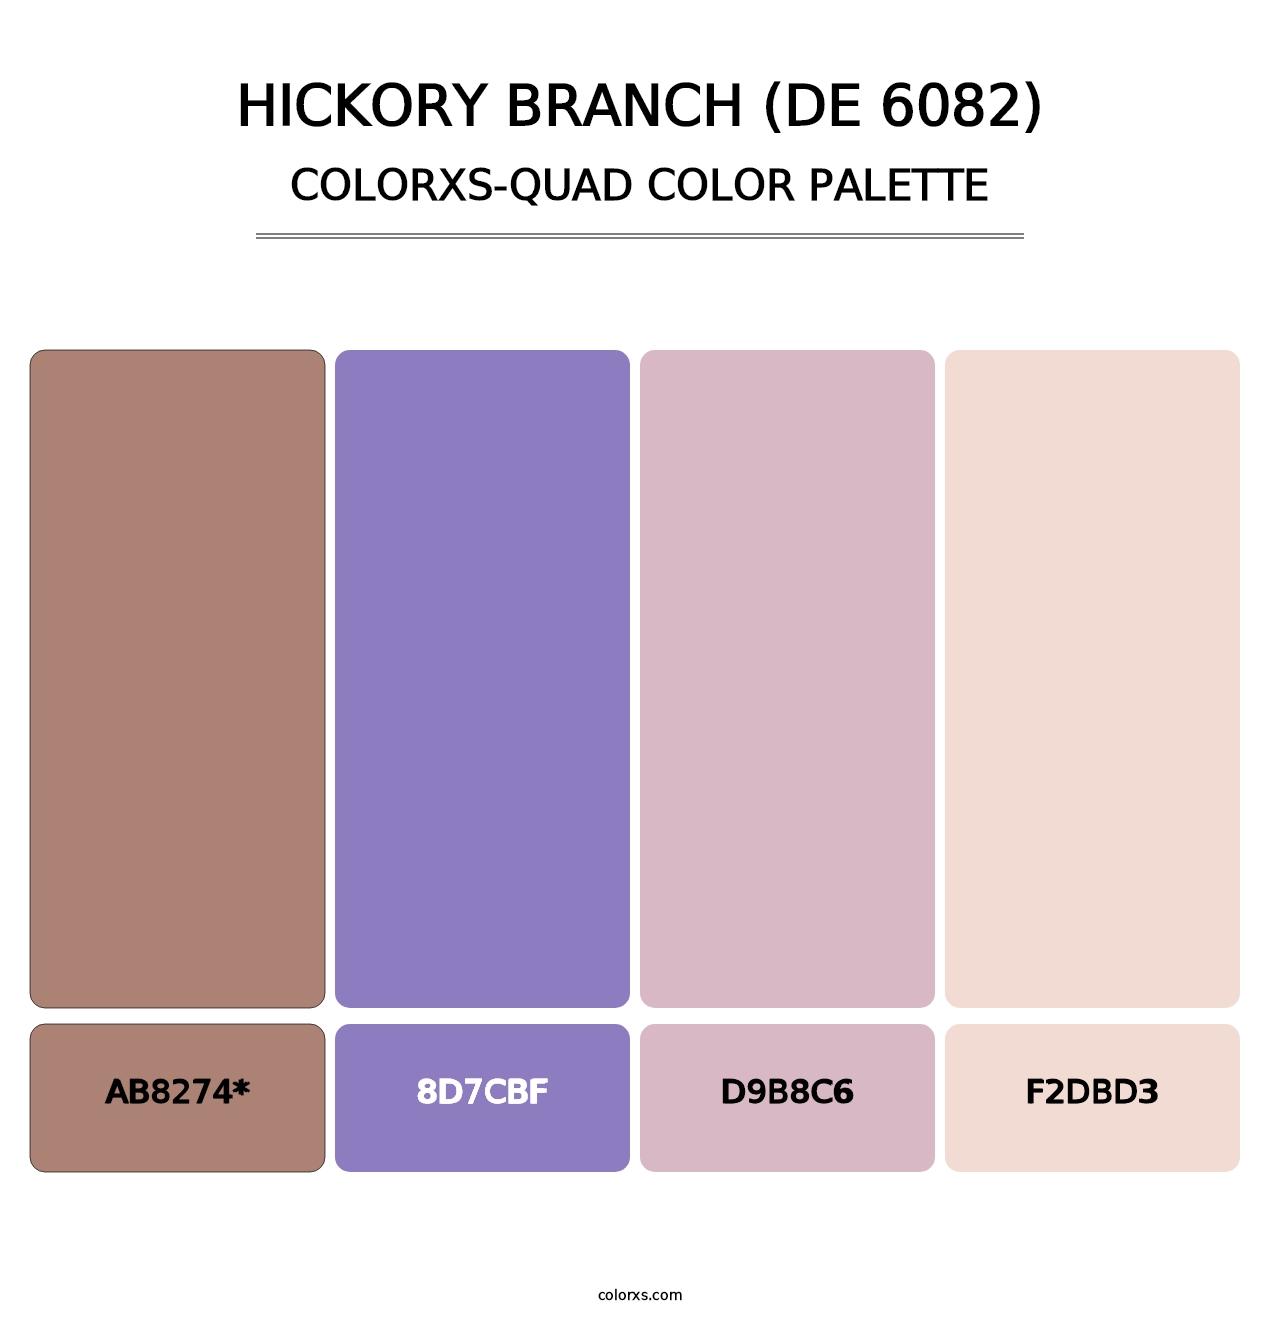 Hickory Branch (DE 6082) - Colorxs Quad Palette